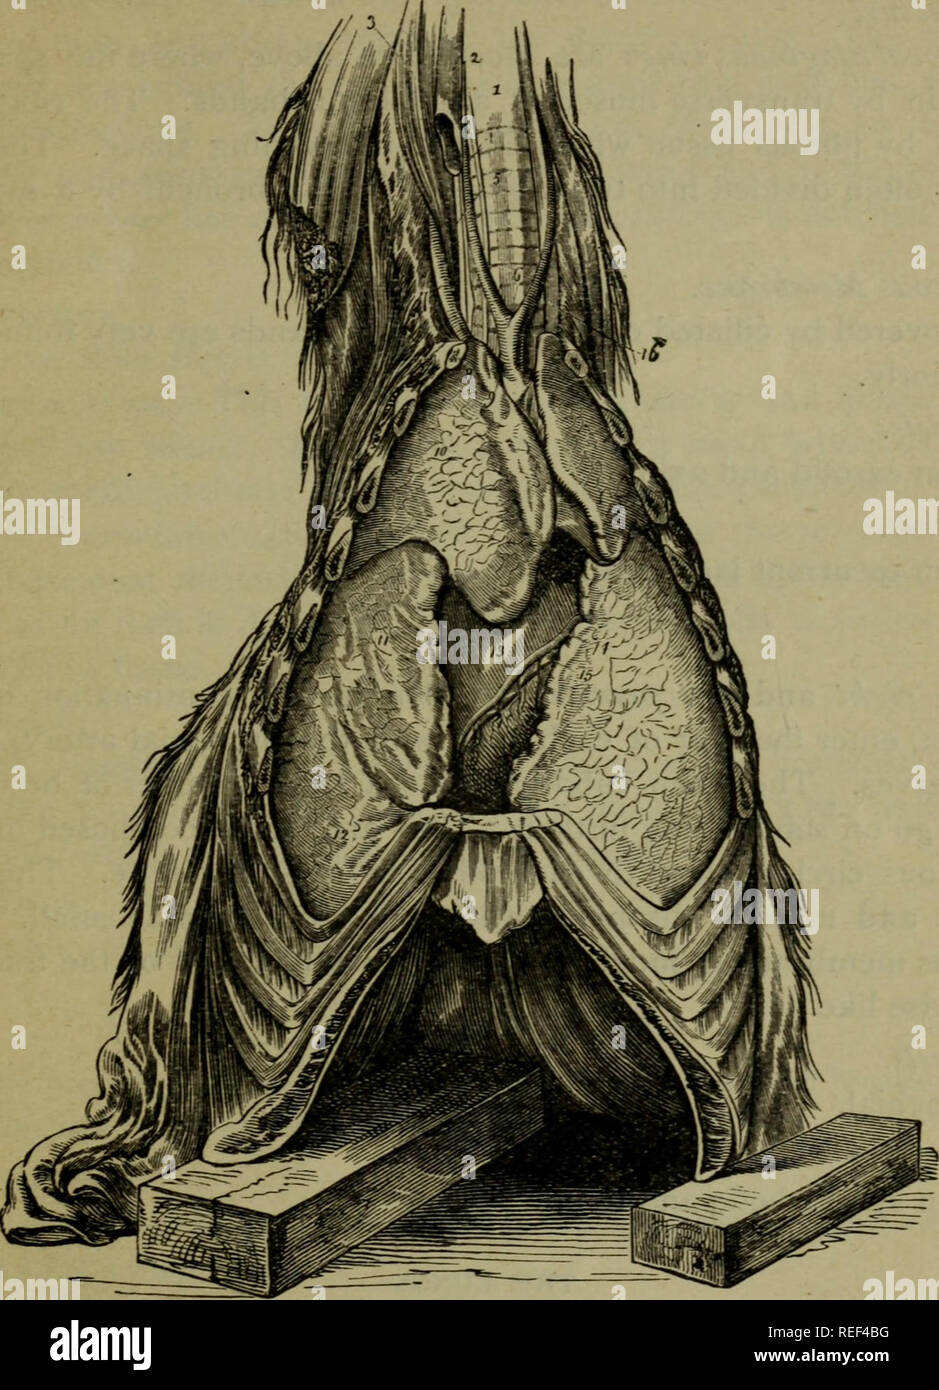 . Un compend equino di anatomia e fisiologia. I cavalli. Anatomia viscerale. *37 Fig. 23.. Gli organi respiratori; inferiore, o vista frontale. Trachea; 2, la vena giugulare ; 3, Grande rectus anticus muscolo ; 4, arteria carotide ; 5, longus colli del muscolo ; 6, origine delle carotidi comuni ; 7, arteria vertebrale; 8, la sezione della prima nervatura; 9, trunk cefalica di arteria ascellare destra; 10, lobo anteriore del polmone destro; 11, medio, o lobo supplementare di ditto; 12, la porzione posteriore o lobo di idem ; 13, cuore; 14, arteria cardiaca; 15, ventricolare ramo della vena cardiaca; 16, OZsoph- agus. IO. Si prega di notare che queste mi Foto Stock